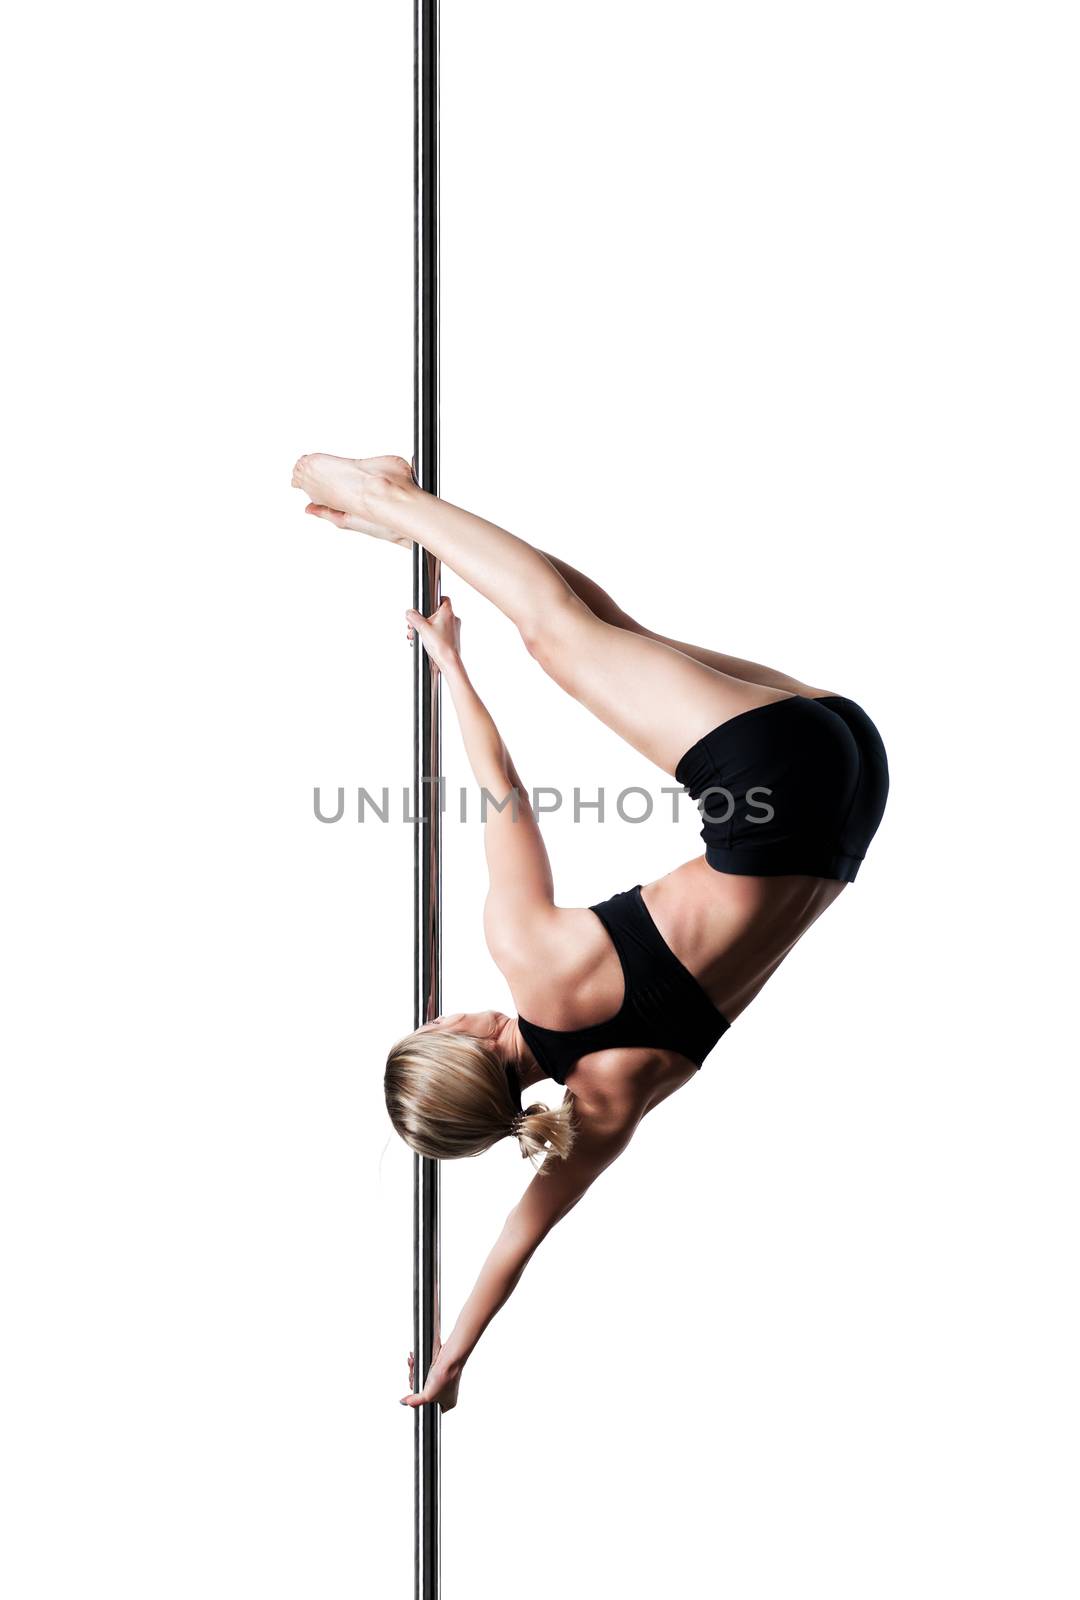 pole dance girl by kokimk